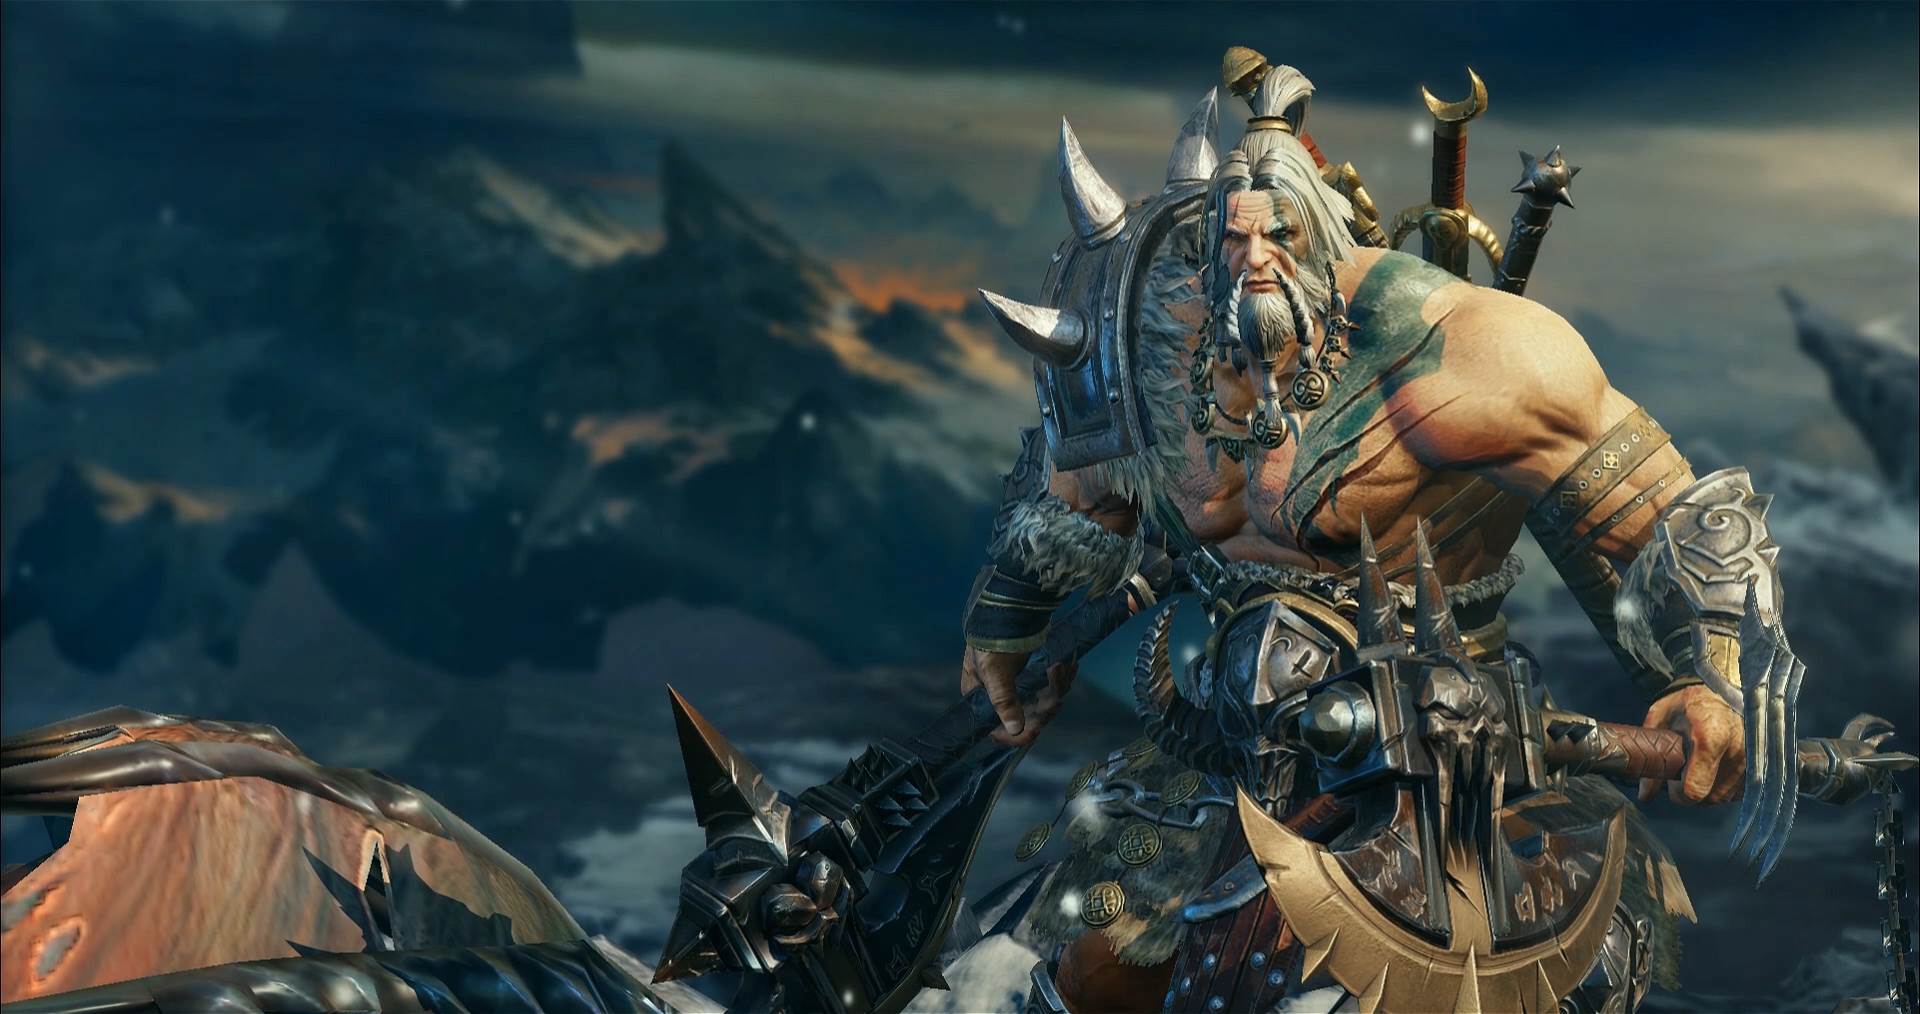  Rimejk video igre Diablo 2 u pripremi: Blizzard kupio potpuno novi studio koji će raditi samo na ovom naslovu 